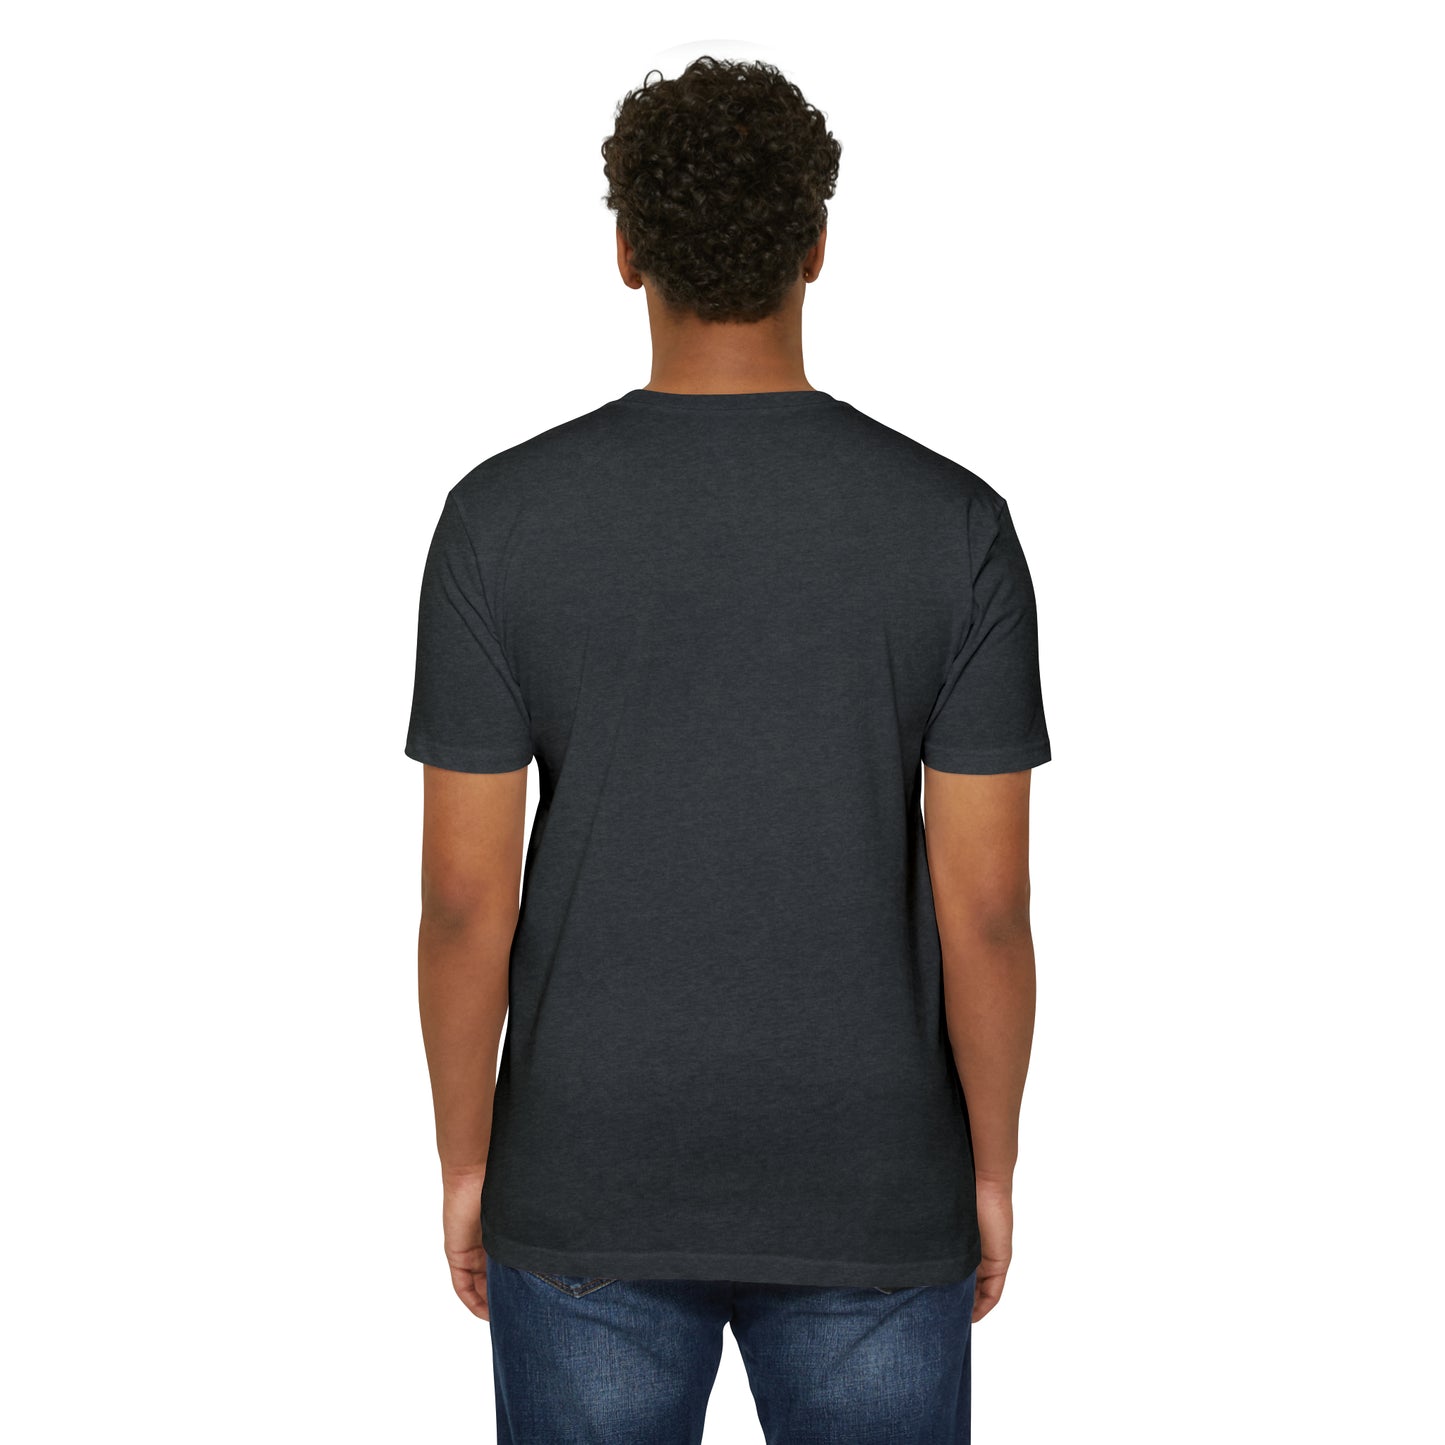 Men's "Endless Summer" Shirt - Utah.com